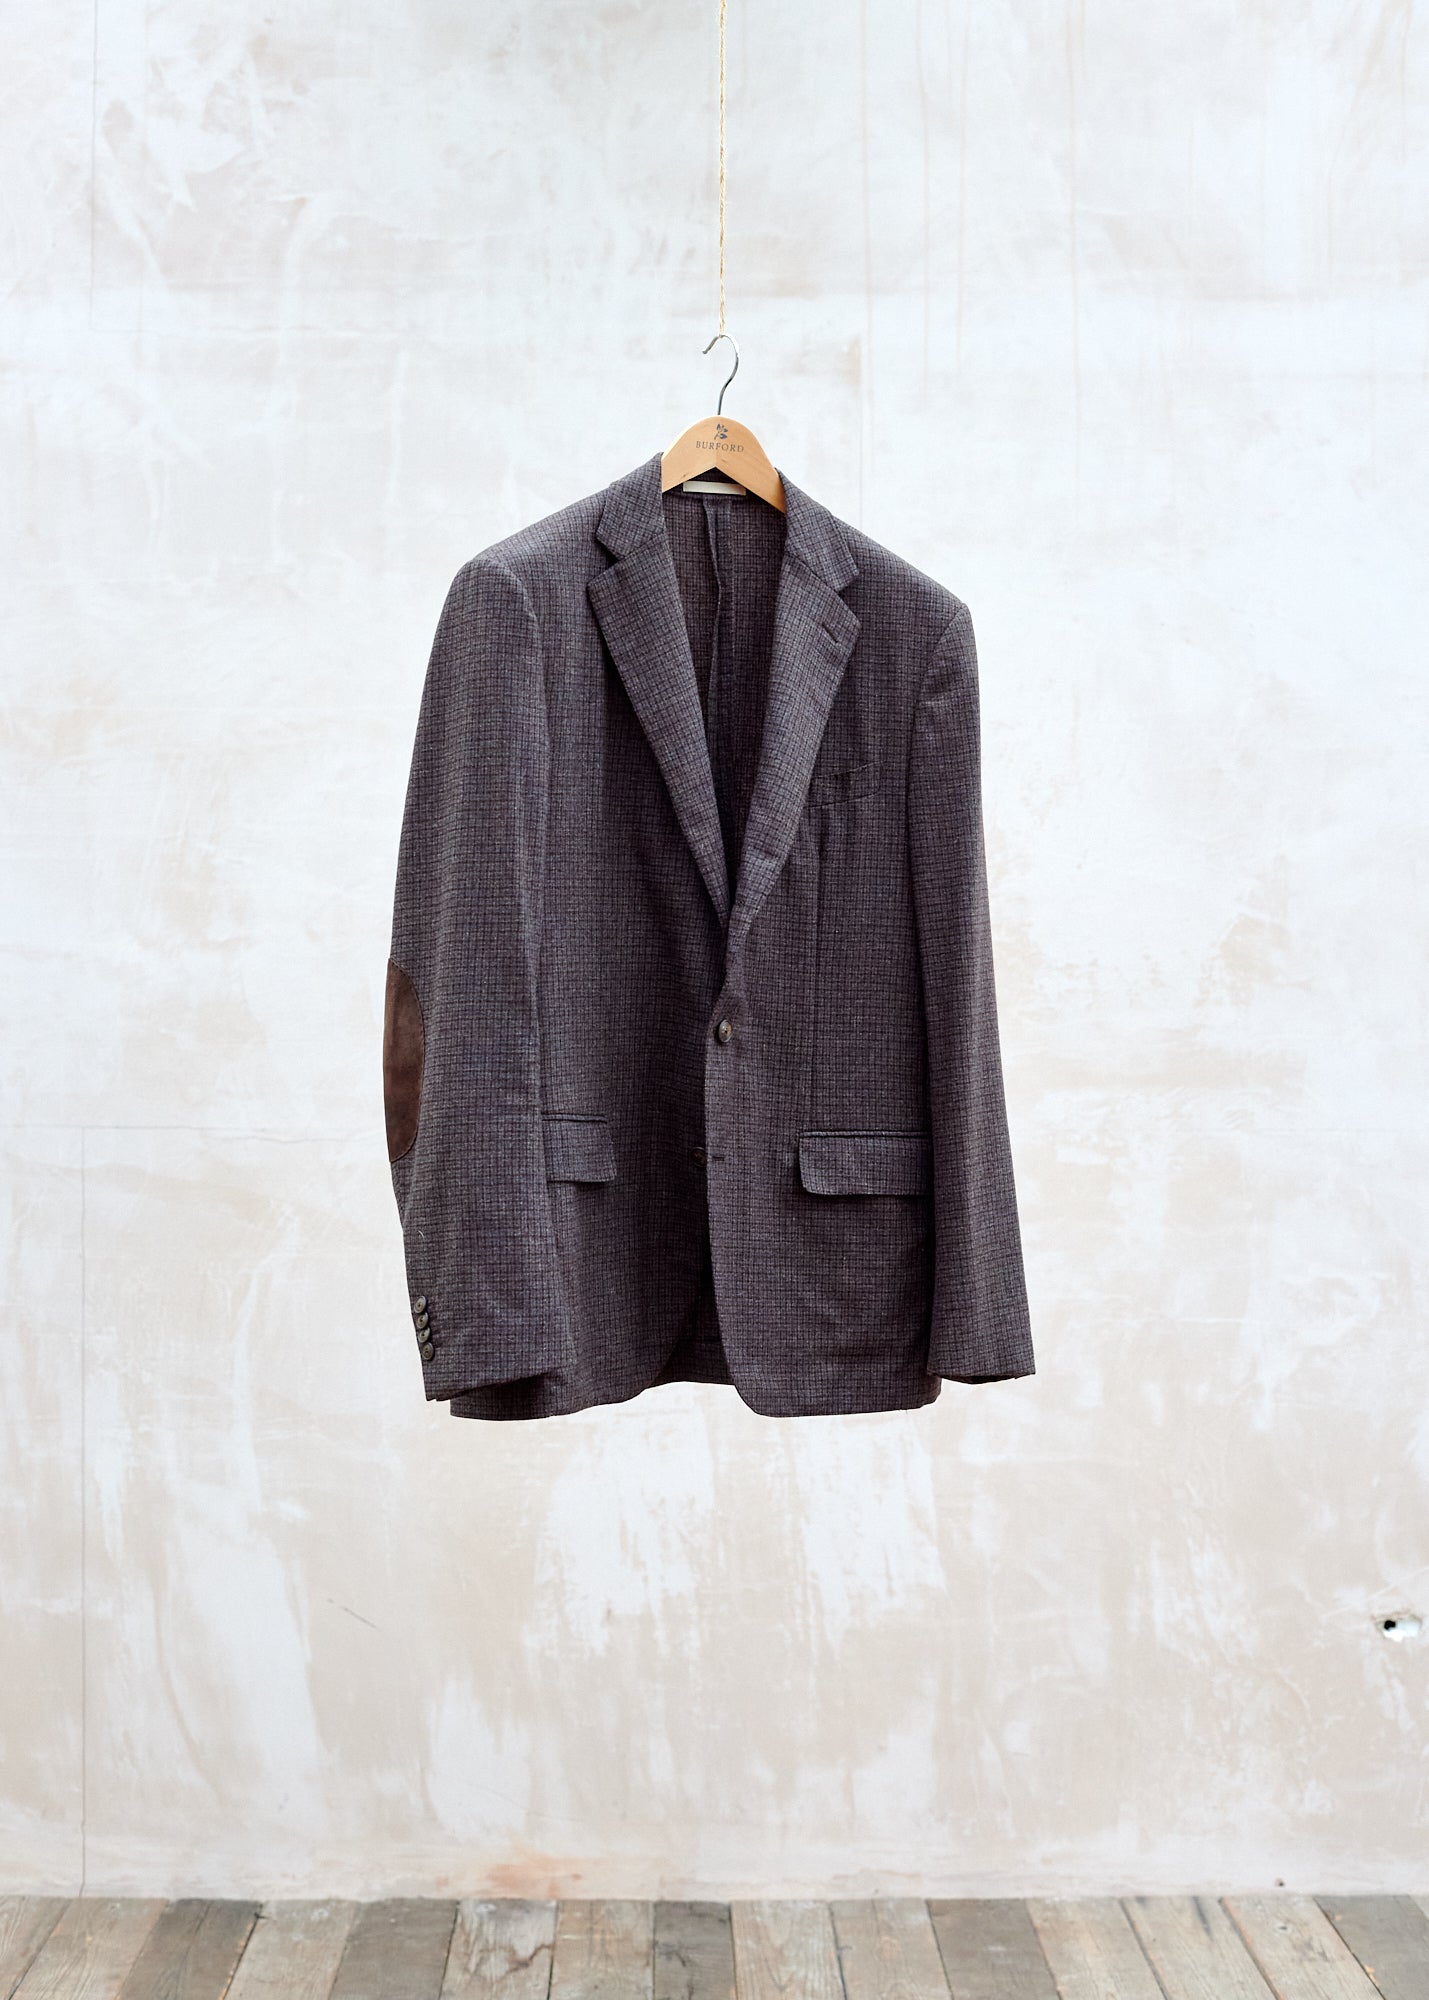 Caruso Wool/Cashmere Casual Check Blazer - XL